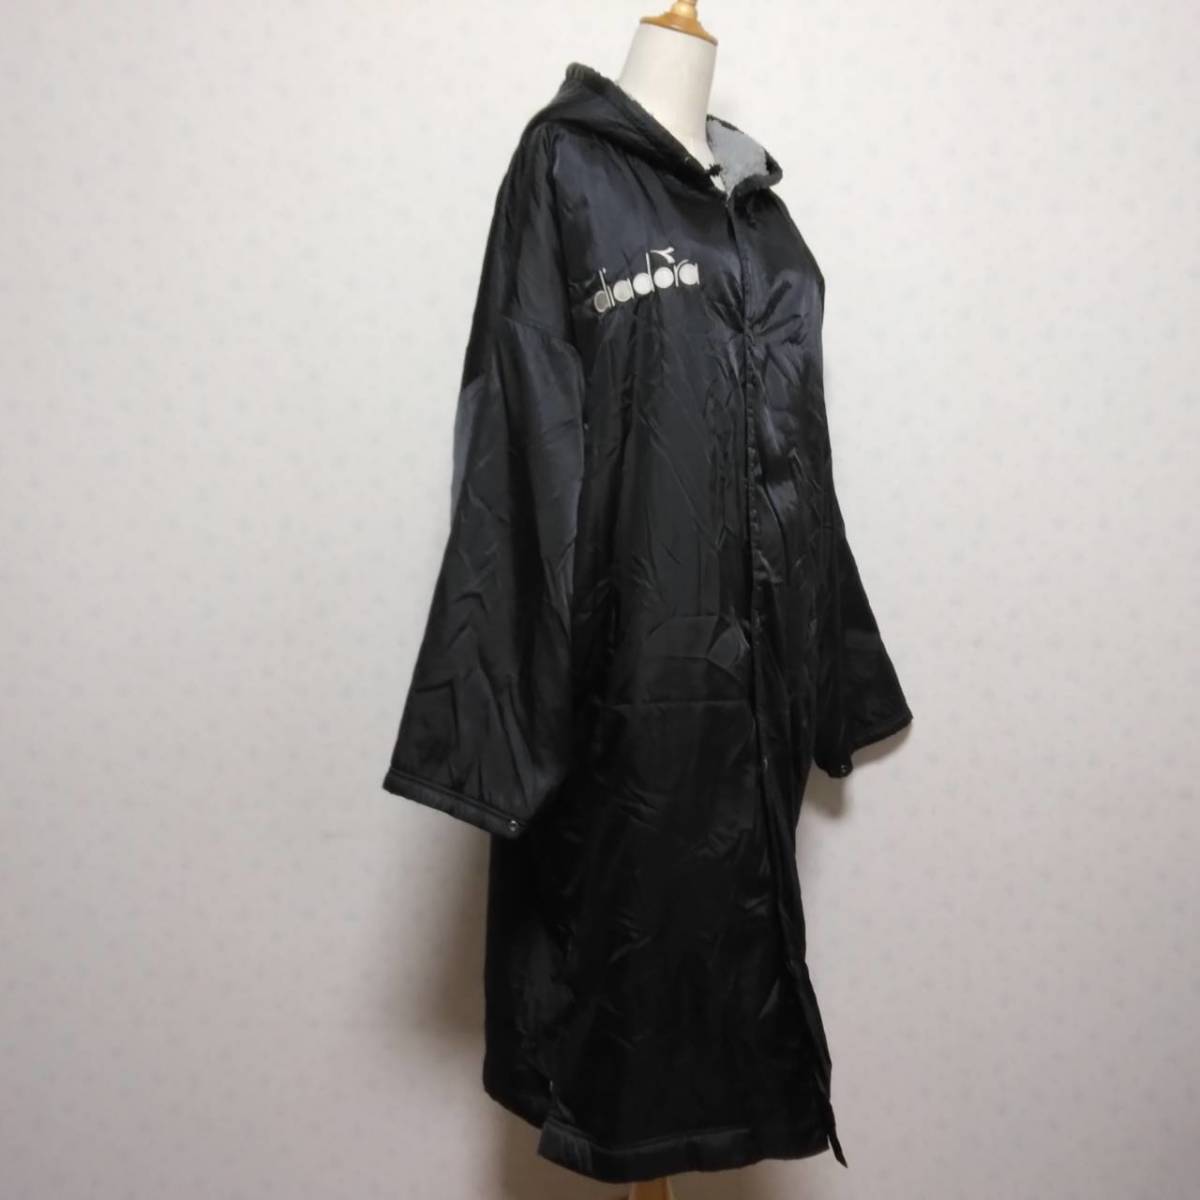 831 DIADORA Diadora с капюшоном bench пальто оттенок черного свободный размер с логотипом длинный нейлон полиэстер защищающий от холода б/у одежда USED мужской 